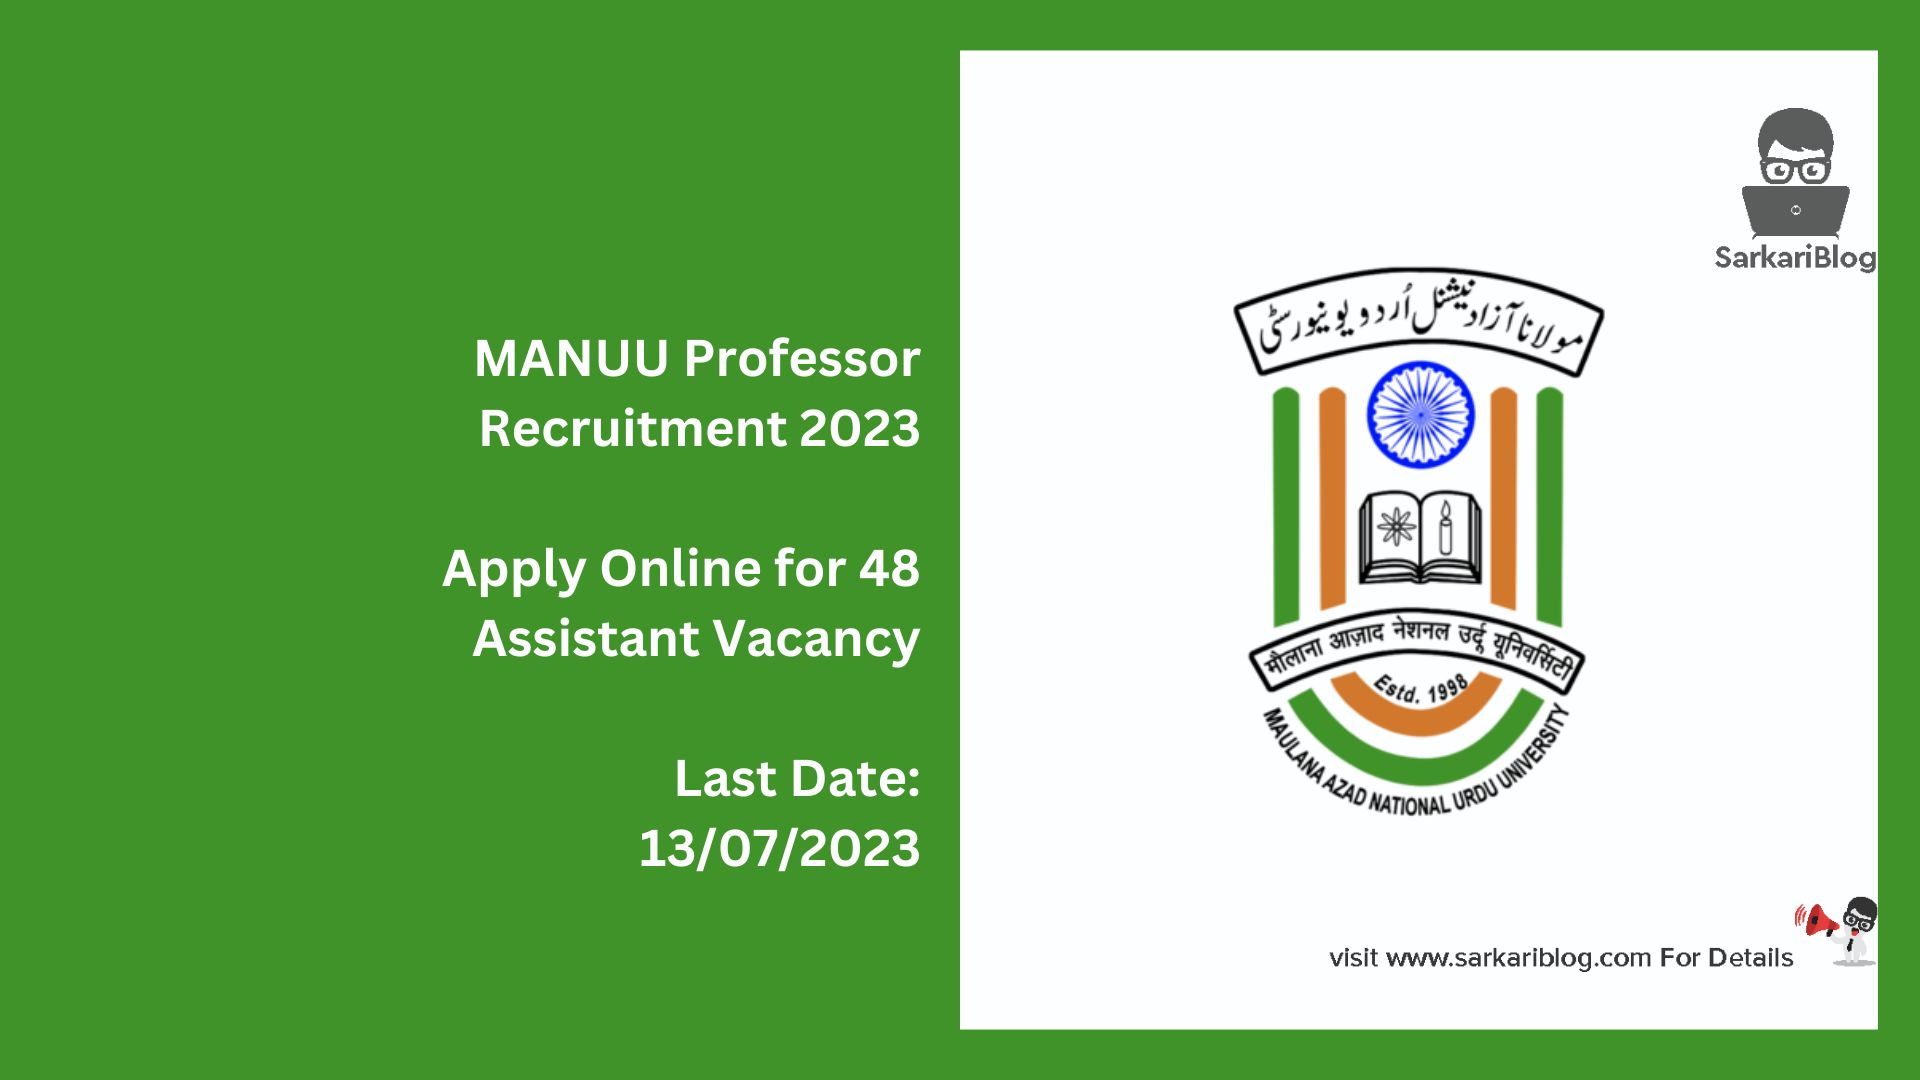 MANUU Professor Recruitment 2023